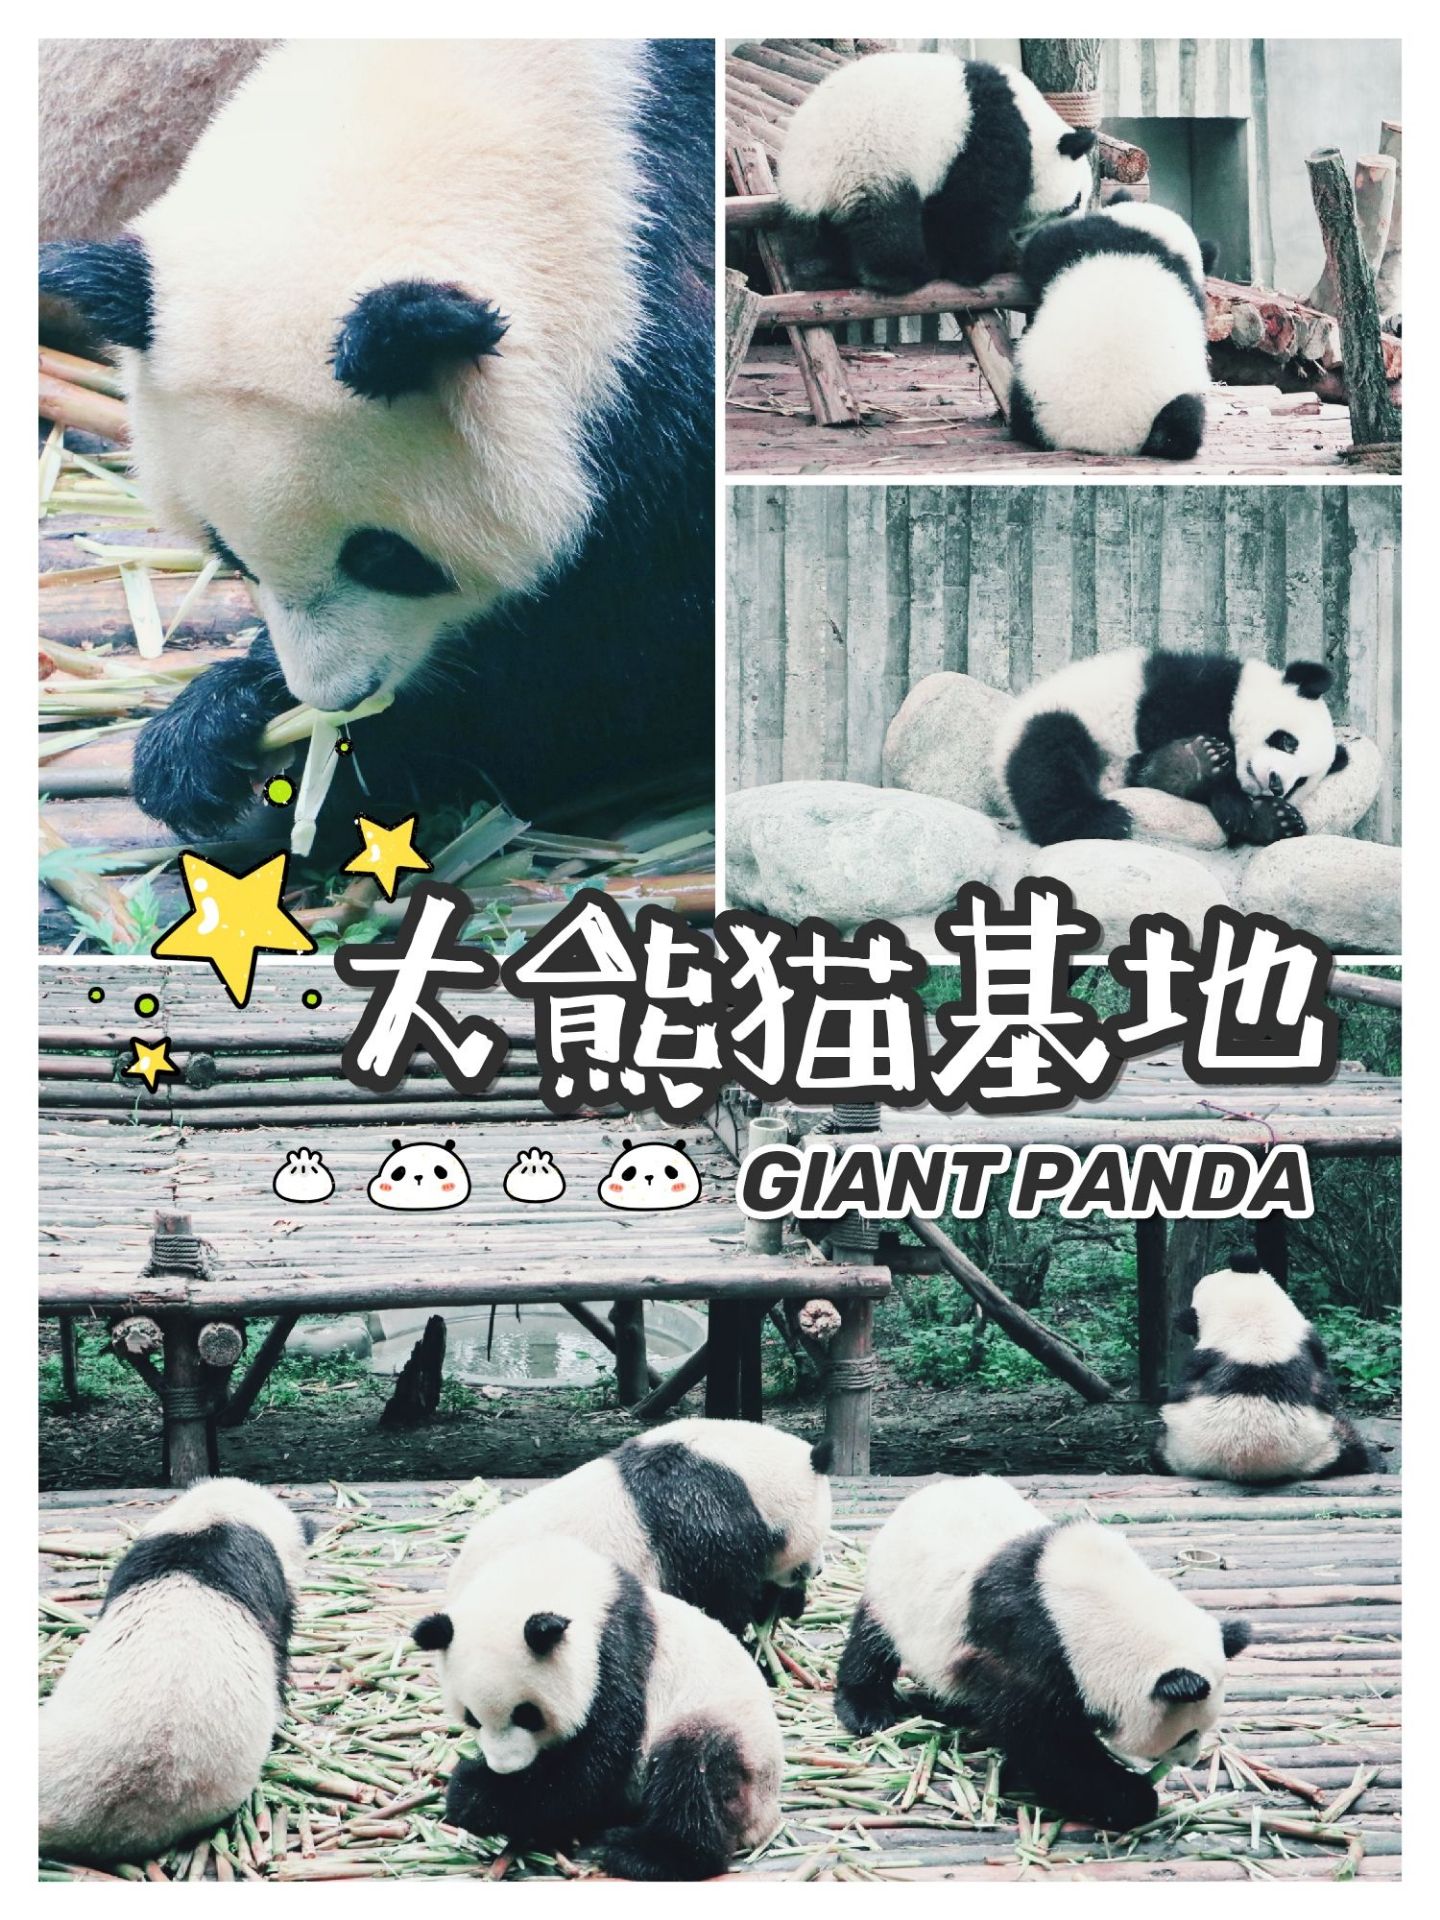 【成都人气top1🔥】大熊猫基地🐼  五一快到了，想好出游计划了么？成都是个不错的选择哟。  到了成